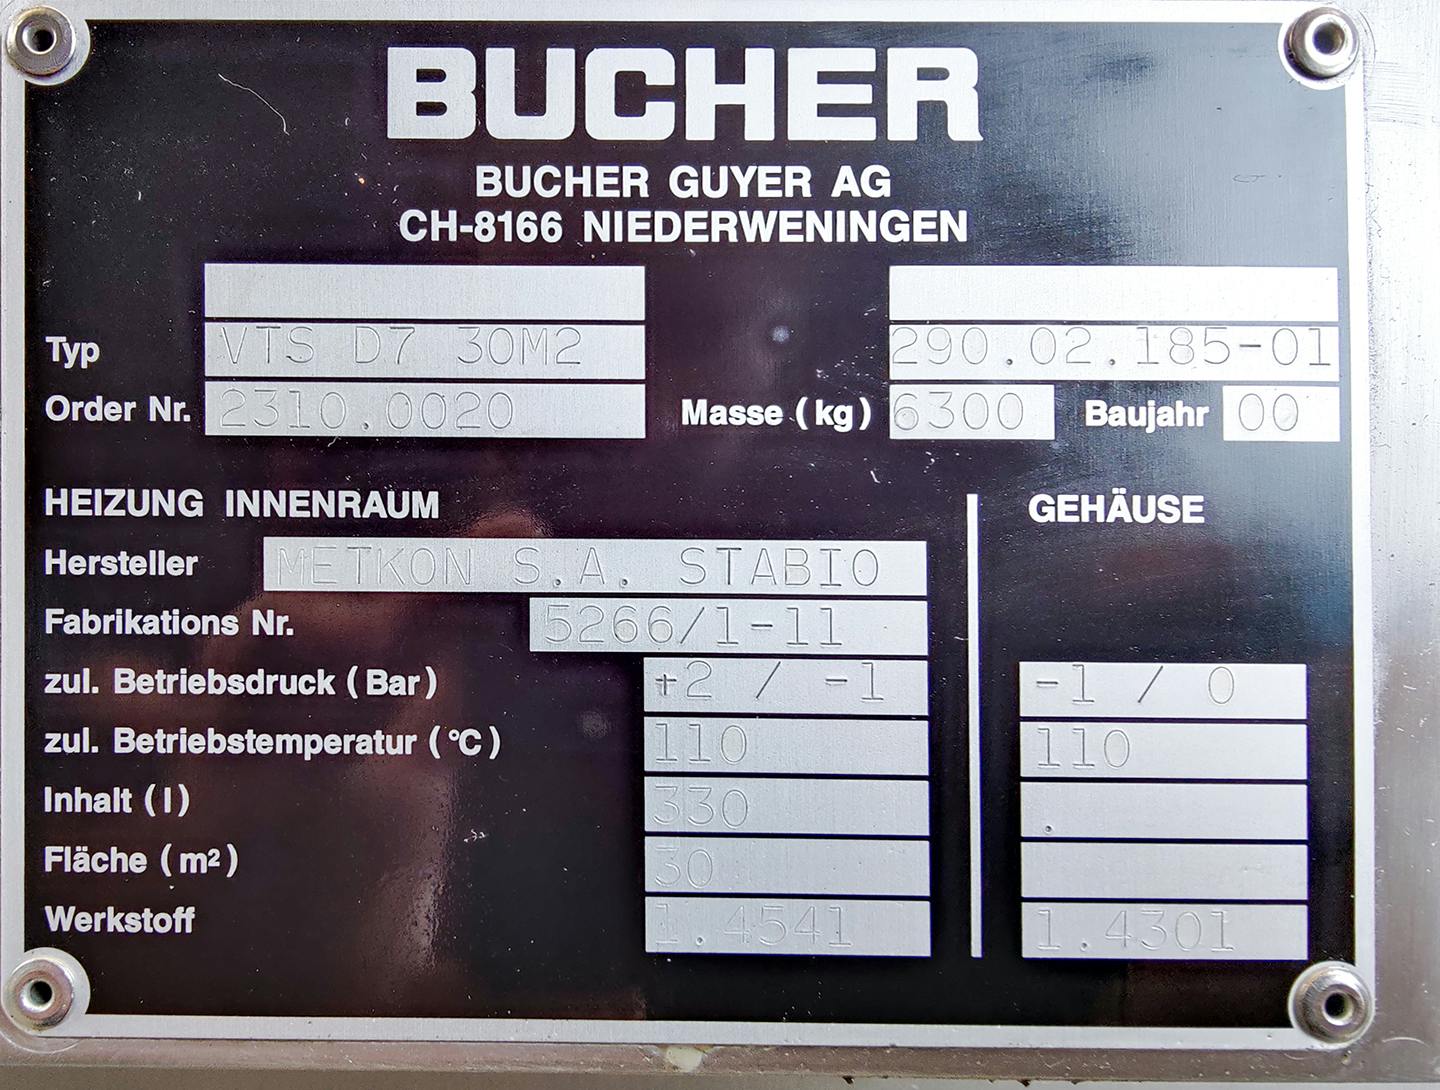 Bucher VTS-D7 30m2 - Secador de bandejas - image 8